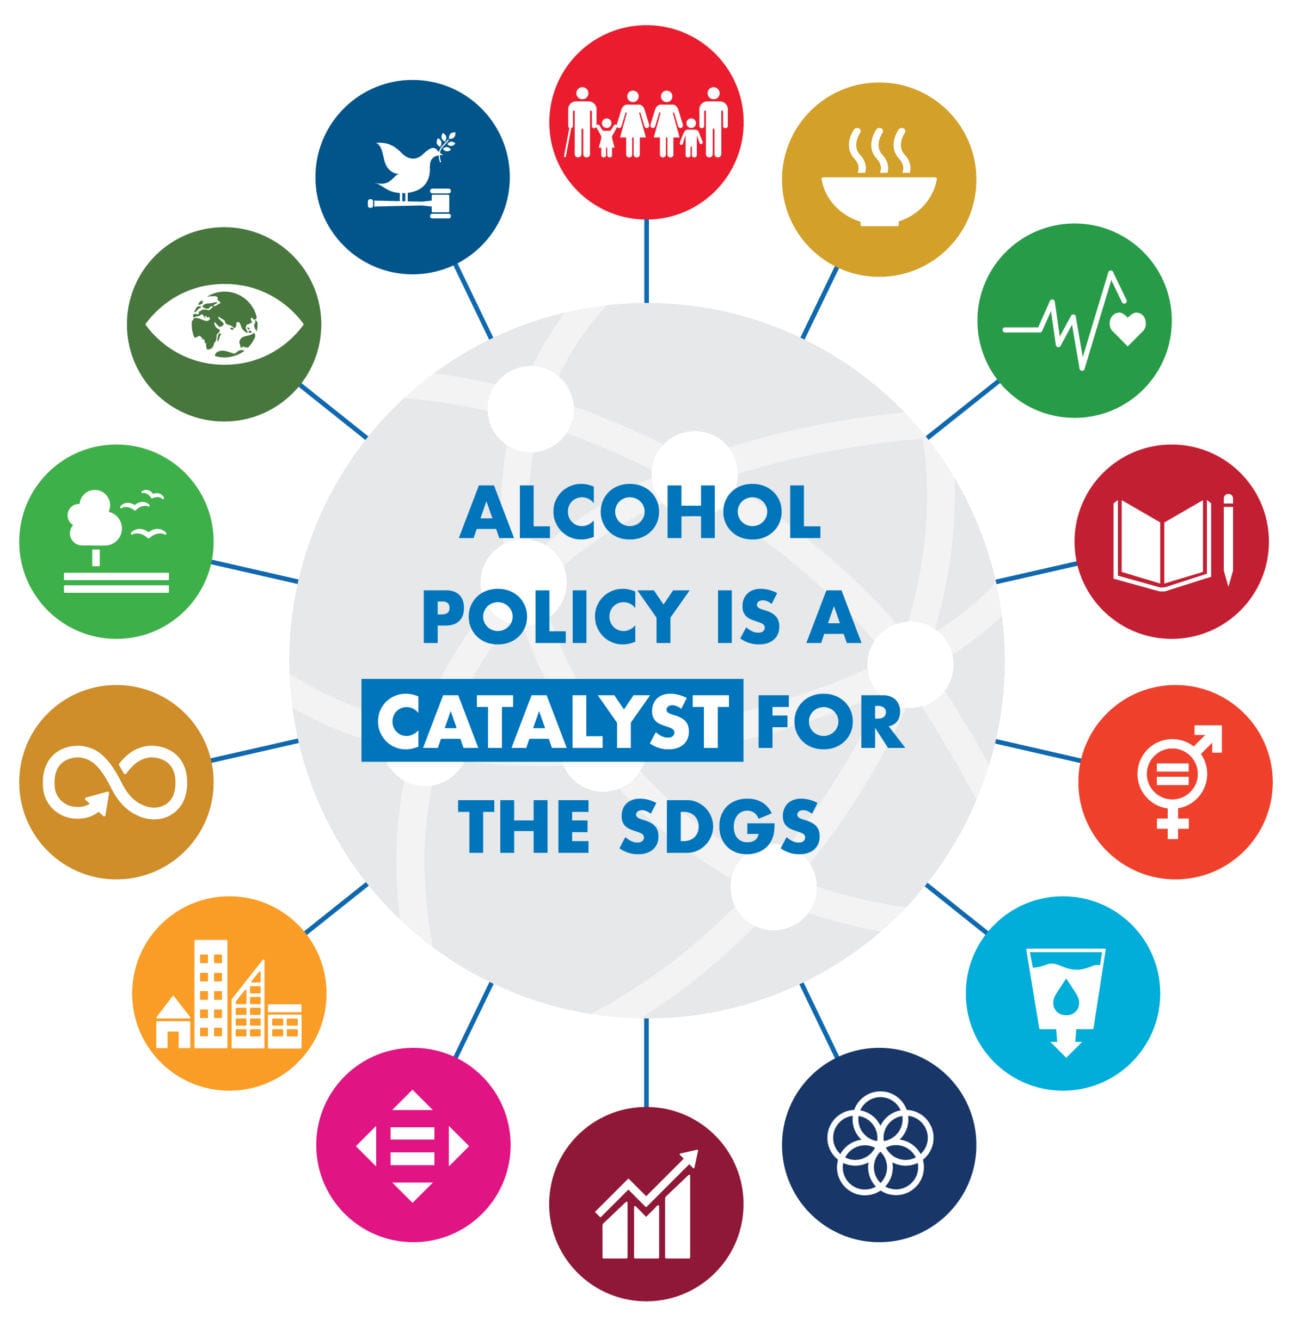 Weltkugel mit Aufschrift Alcohol policty is a catalyst for the SDGs, darum gruppiert die Logos der 17 Nachhaltigen Entwicklungsziele